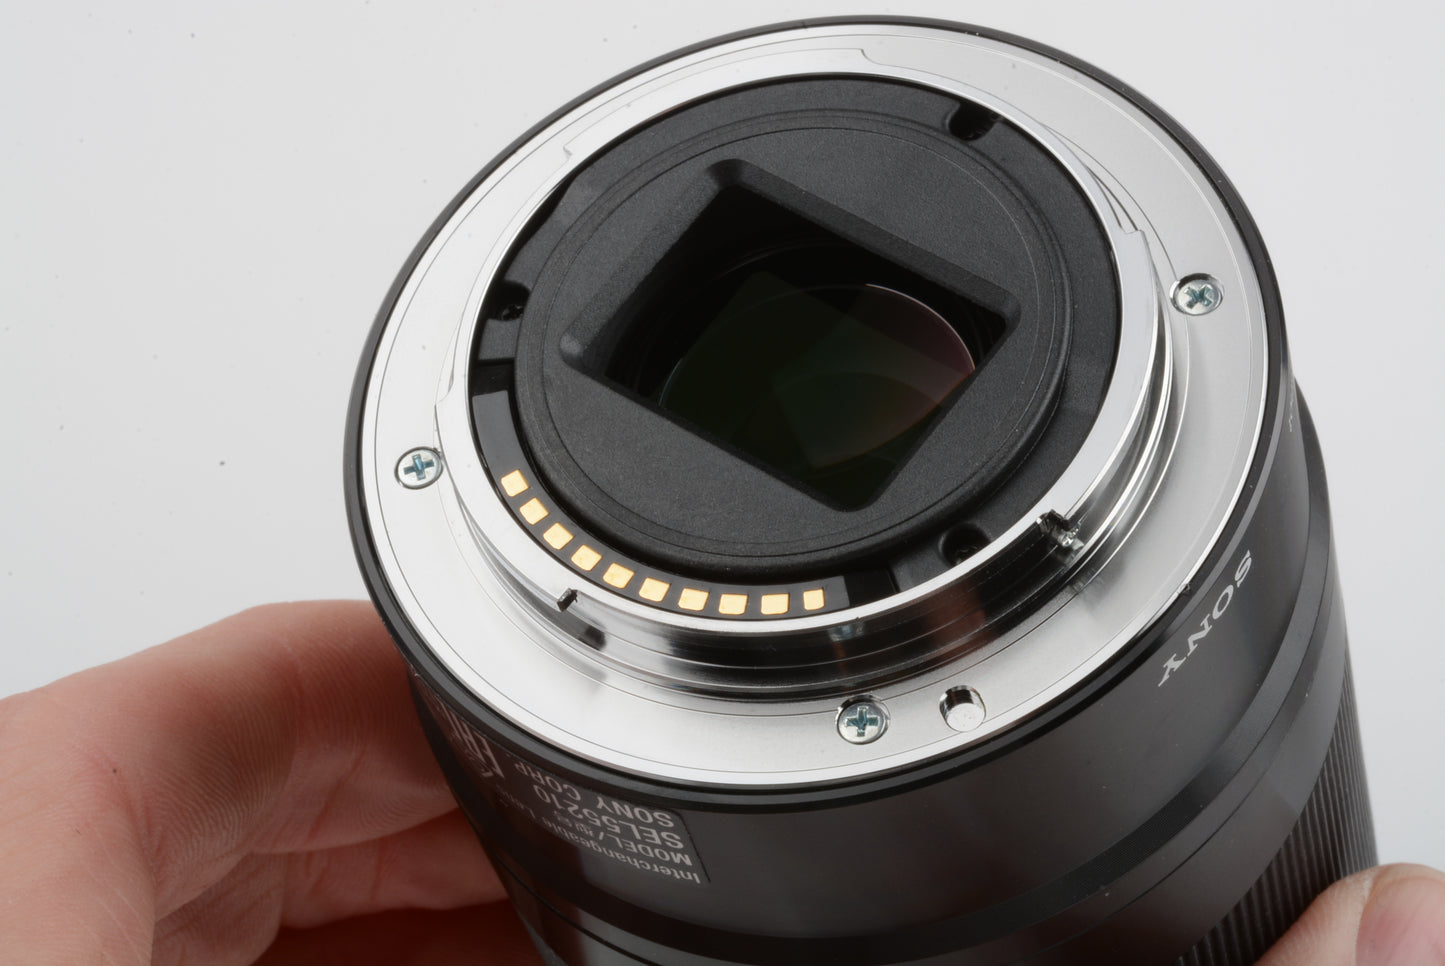 Sony 55-210mm f4.5-6.3 OSS zoom lens (Black) w/Lens caps